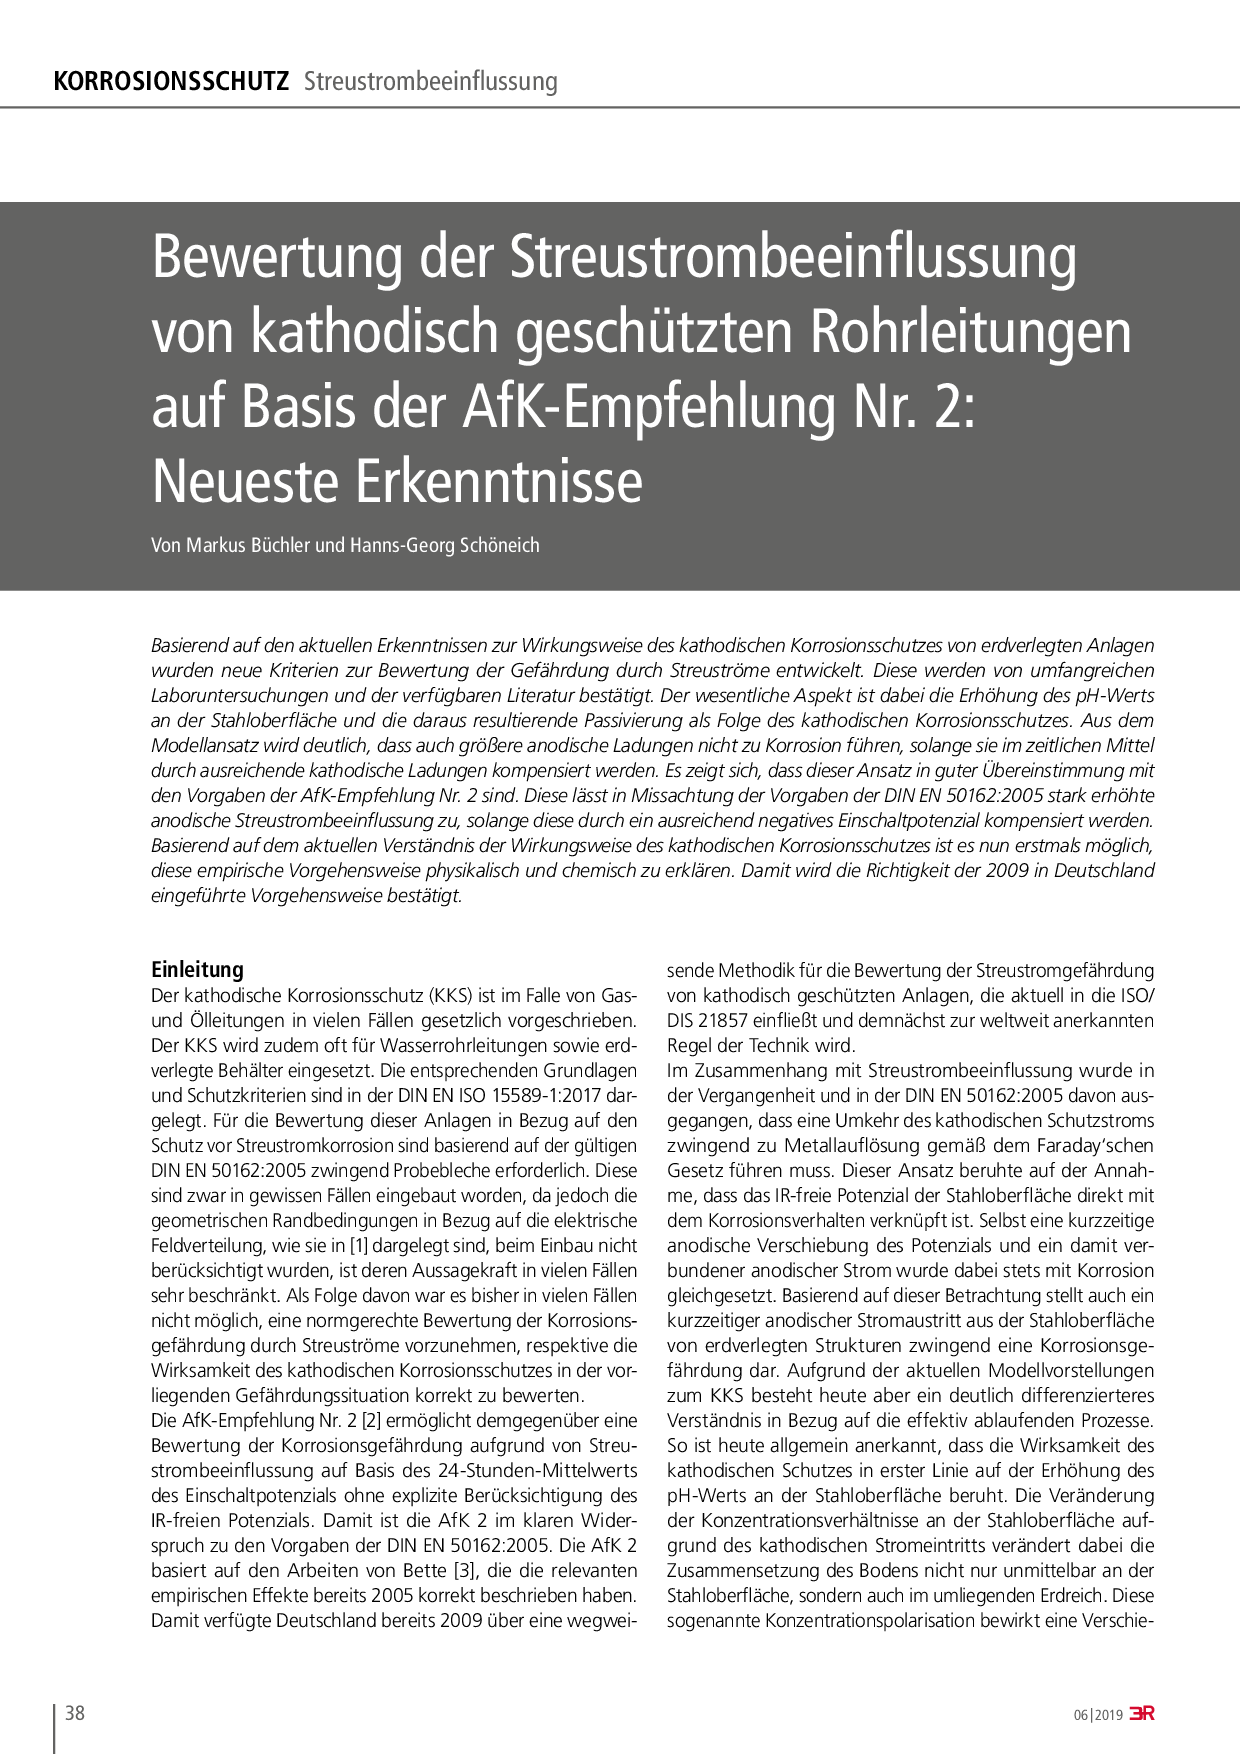 Bewertung der Streustrombeeinflussung von kathodisch geschützten Rohrleitungen auf Basis der AfK-Empfehlung Nr. 2: Neueste Erkenntnisse